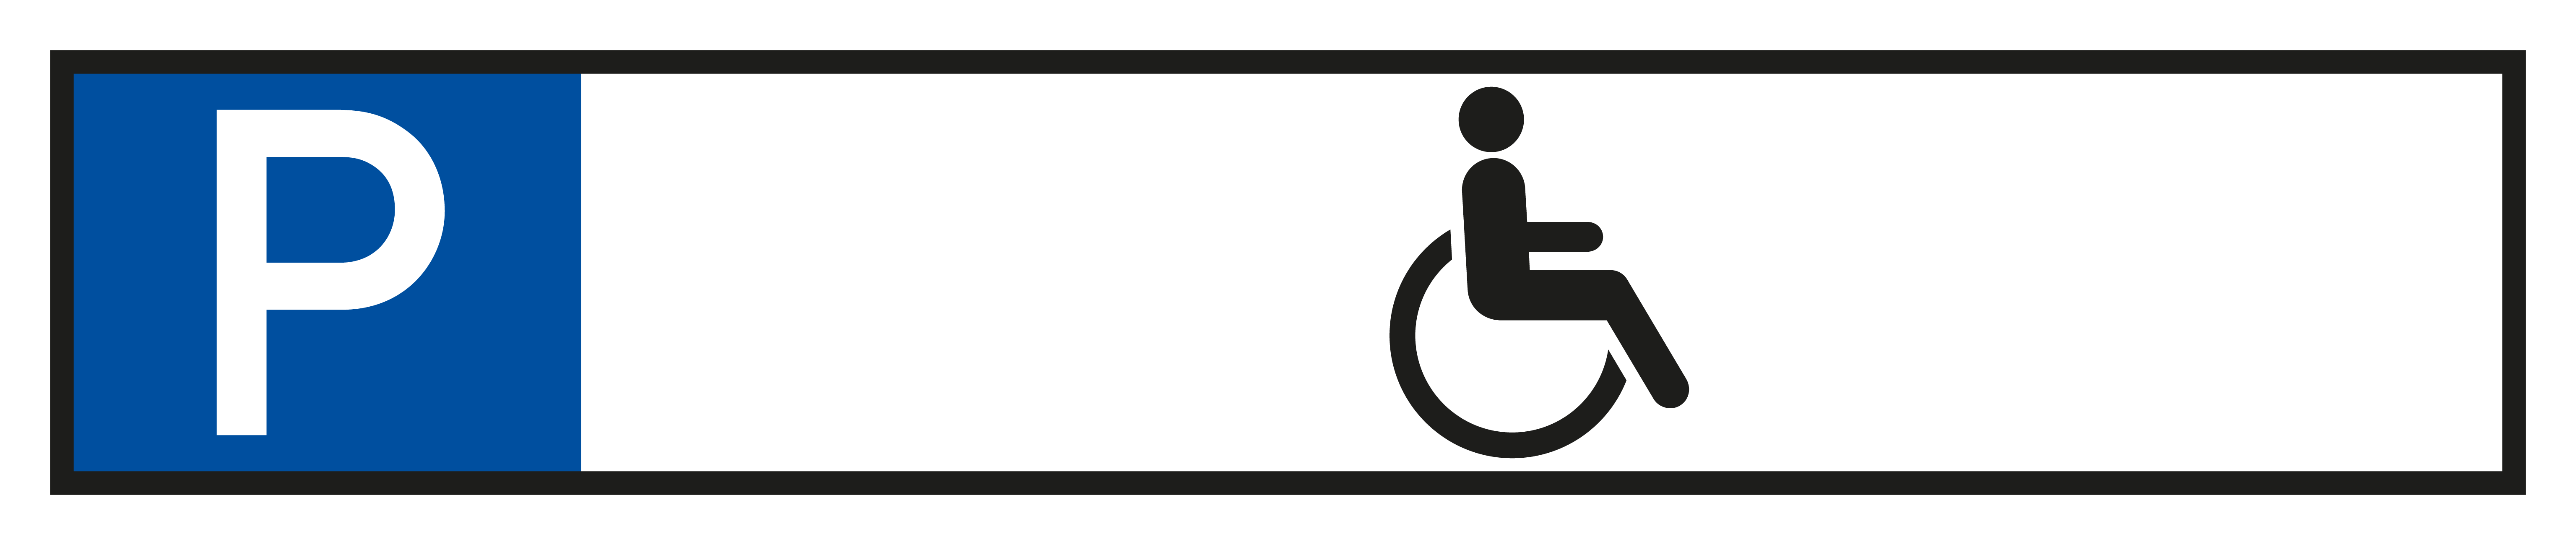 Parkplatzschild - Nur für Rollstuhlfahrer  - Folie Selbstklebend  - 11 x 52 cm